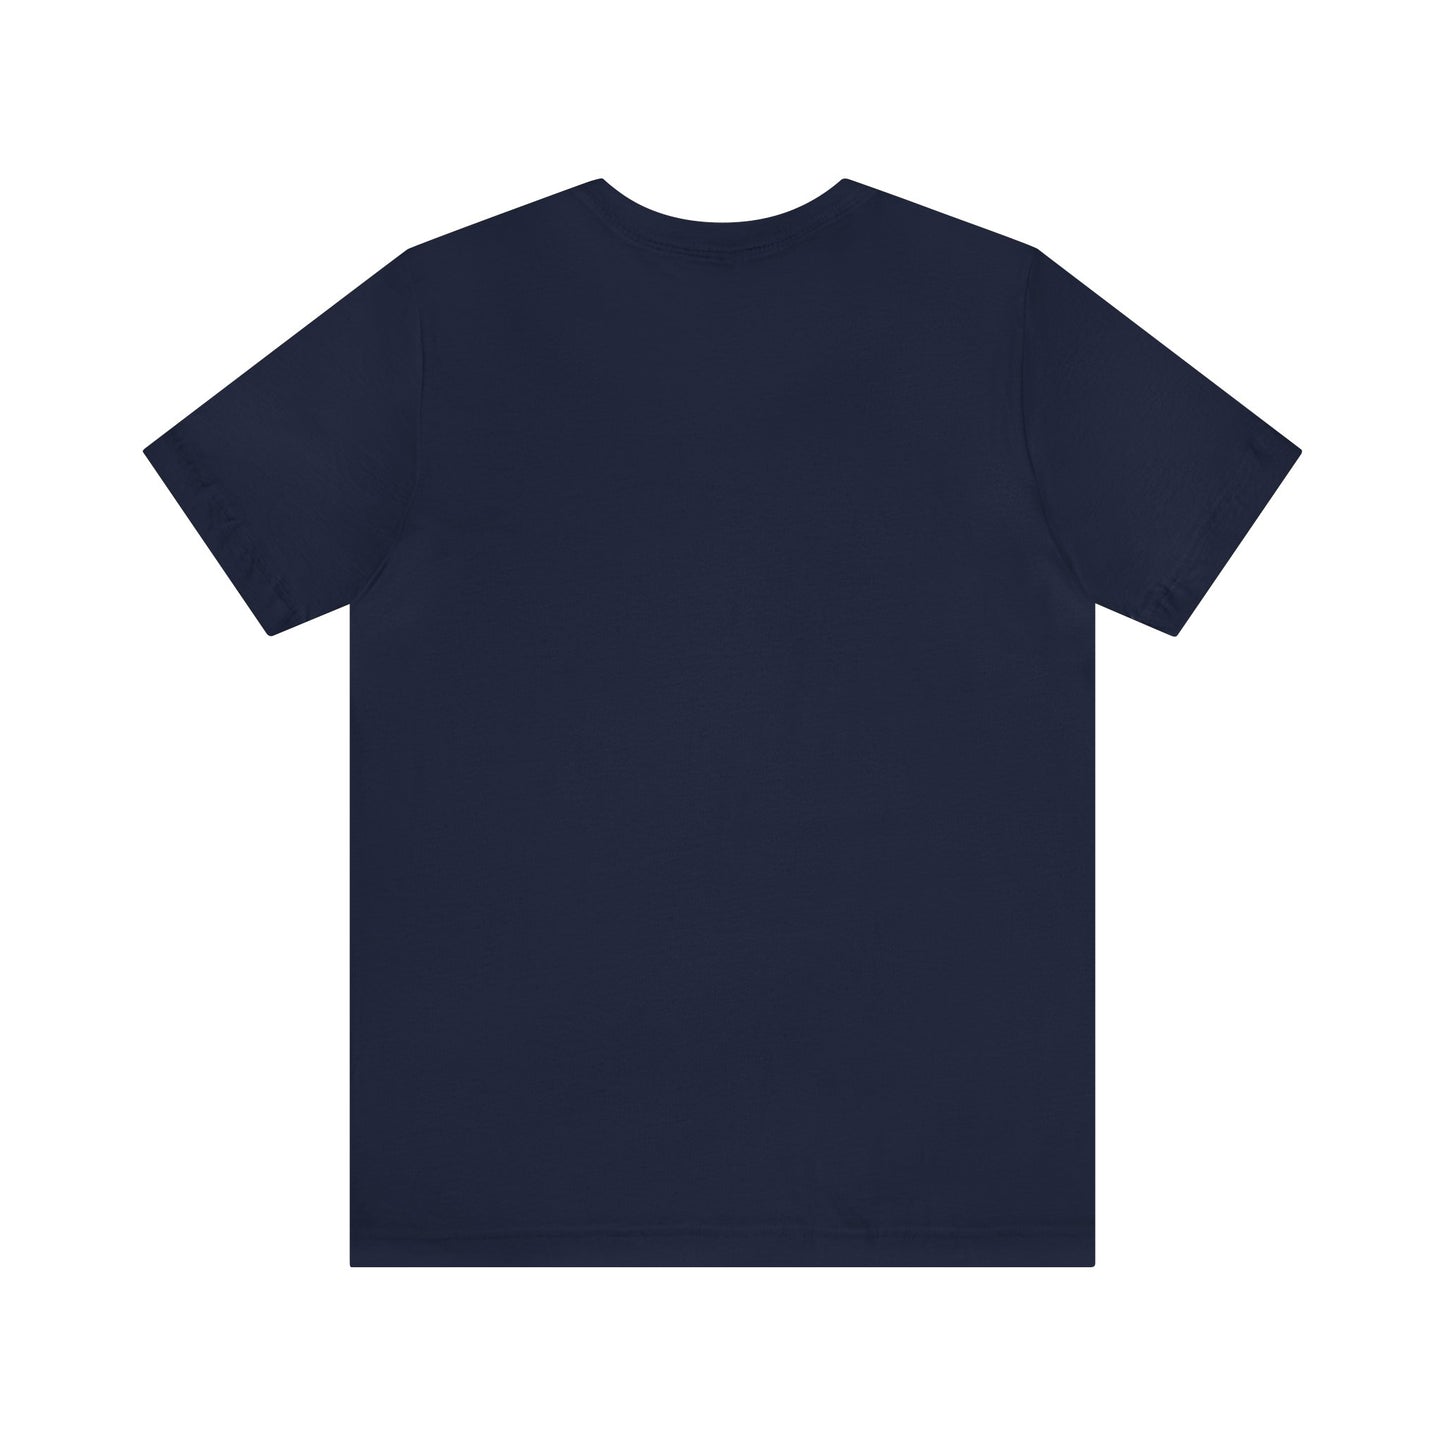 Joggers T-Shirt | Jogger Gift Idea T-Shirt Petrova Designs